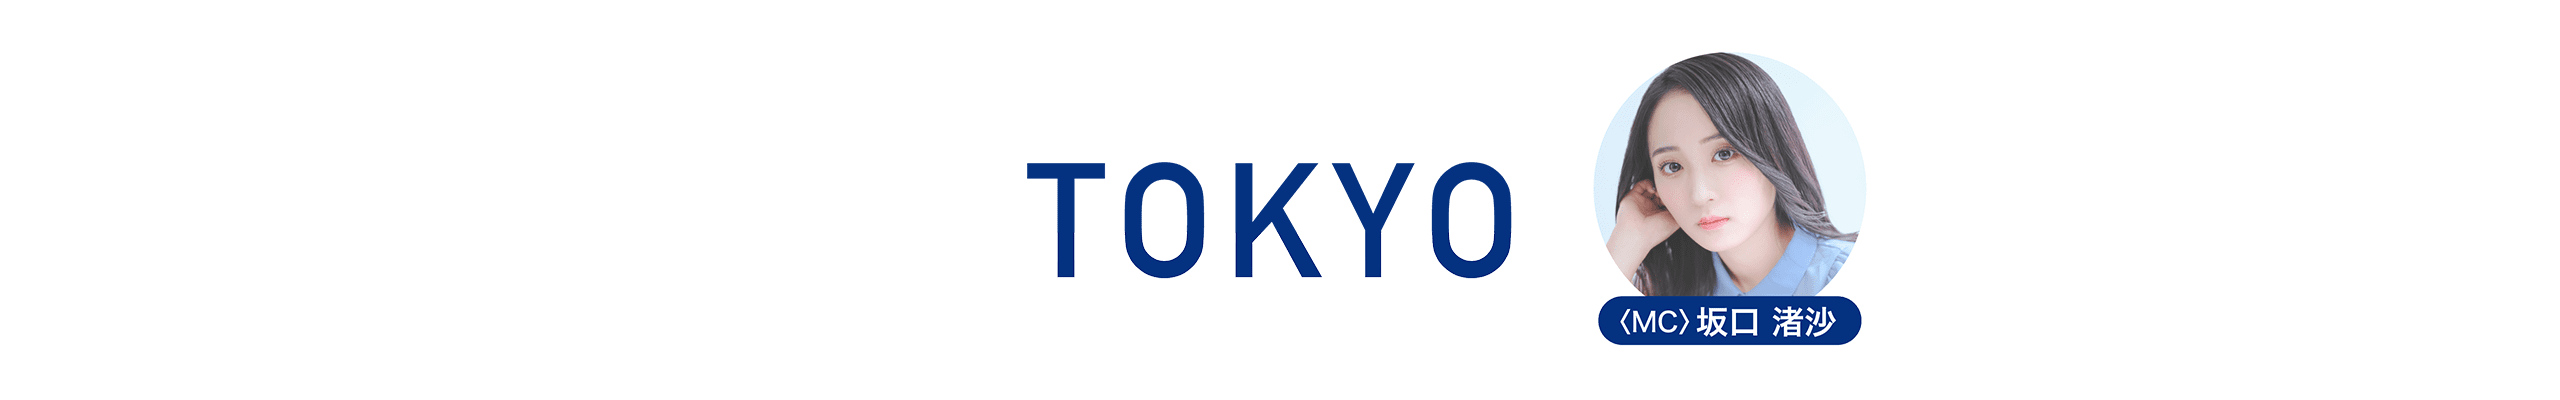 tokyo_top_pc